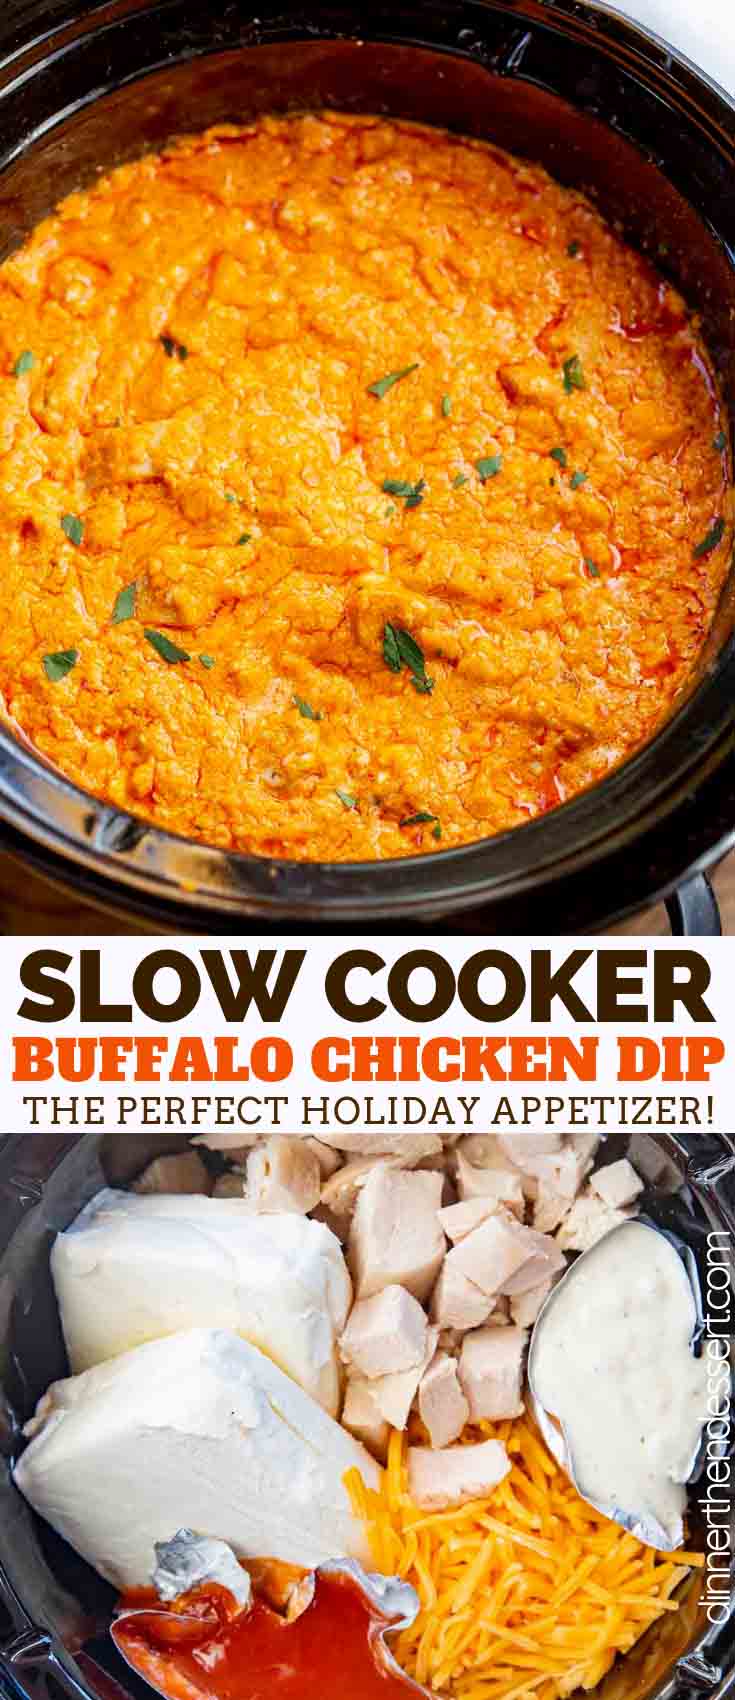 buffalo chicken dip recipe stovetop